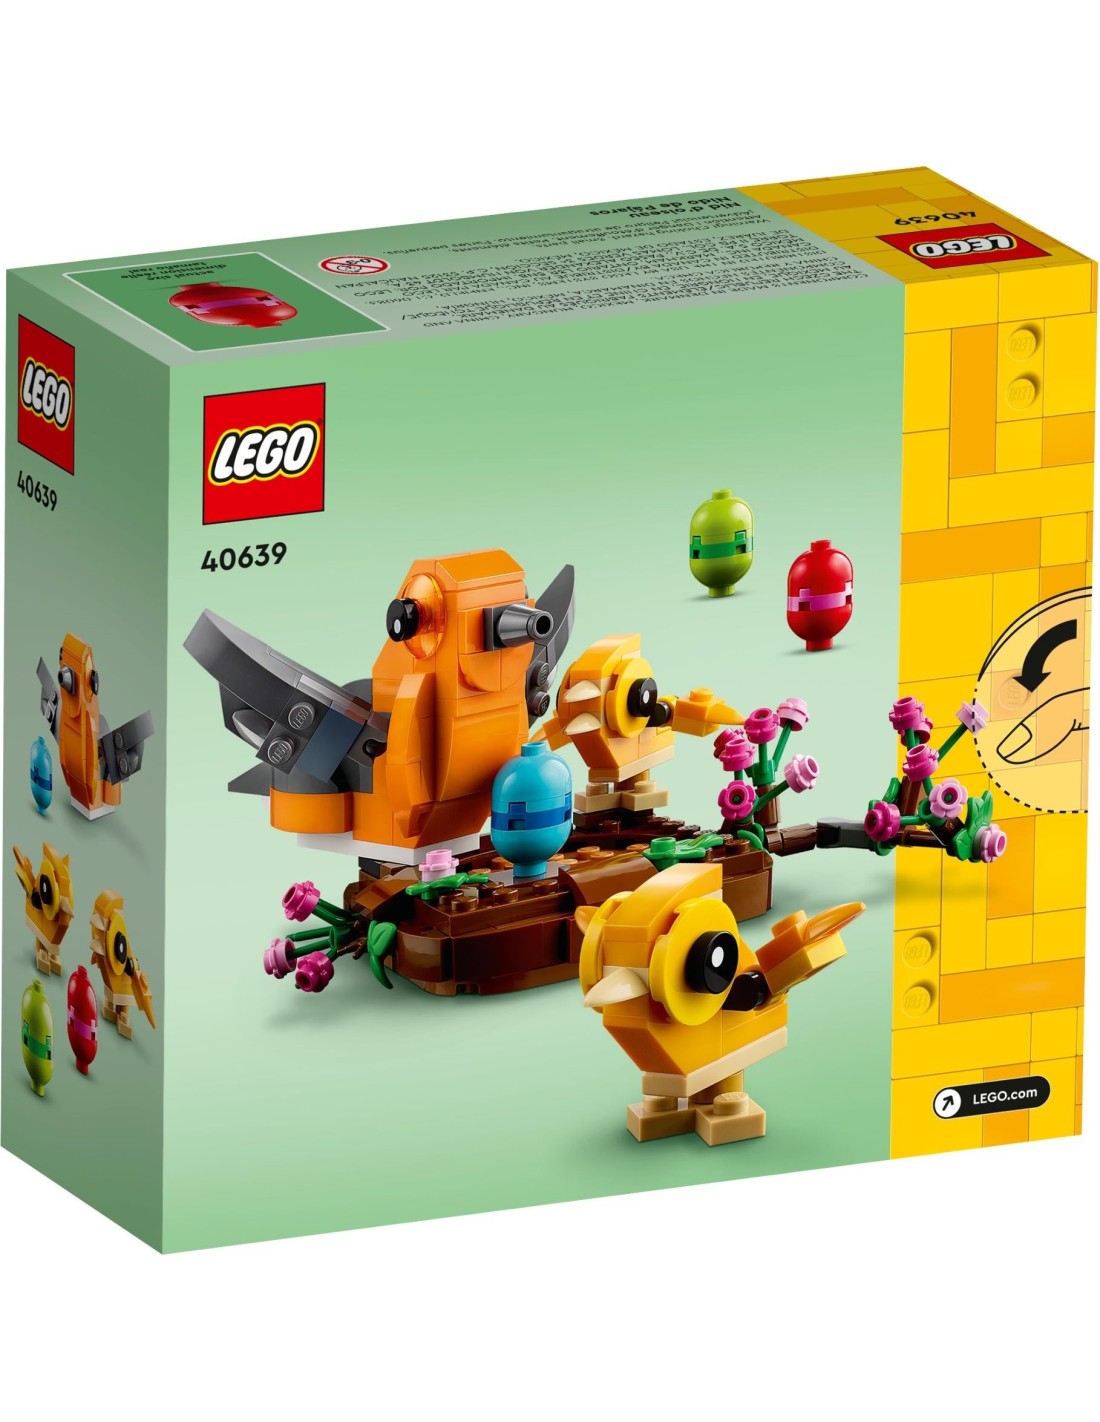 LEGO Exclusifs - Le nid d'oiseau - 40639 - En stock chez